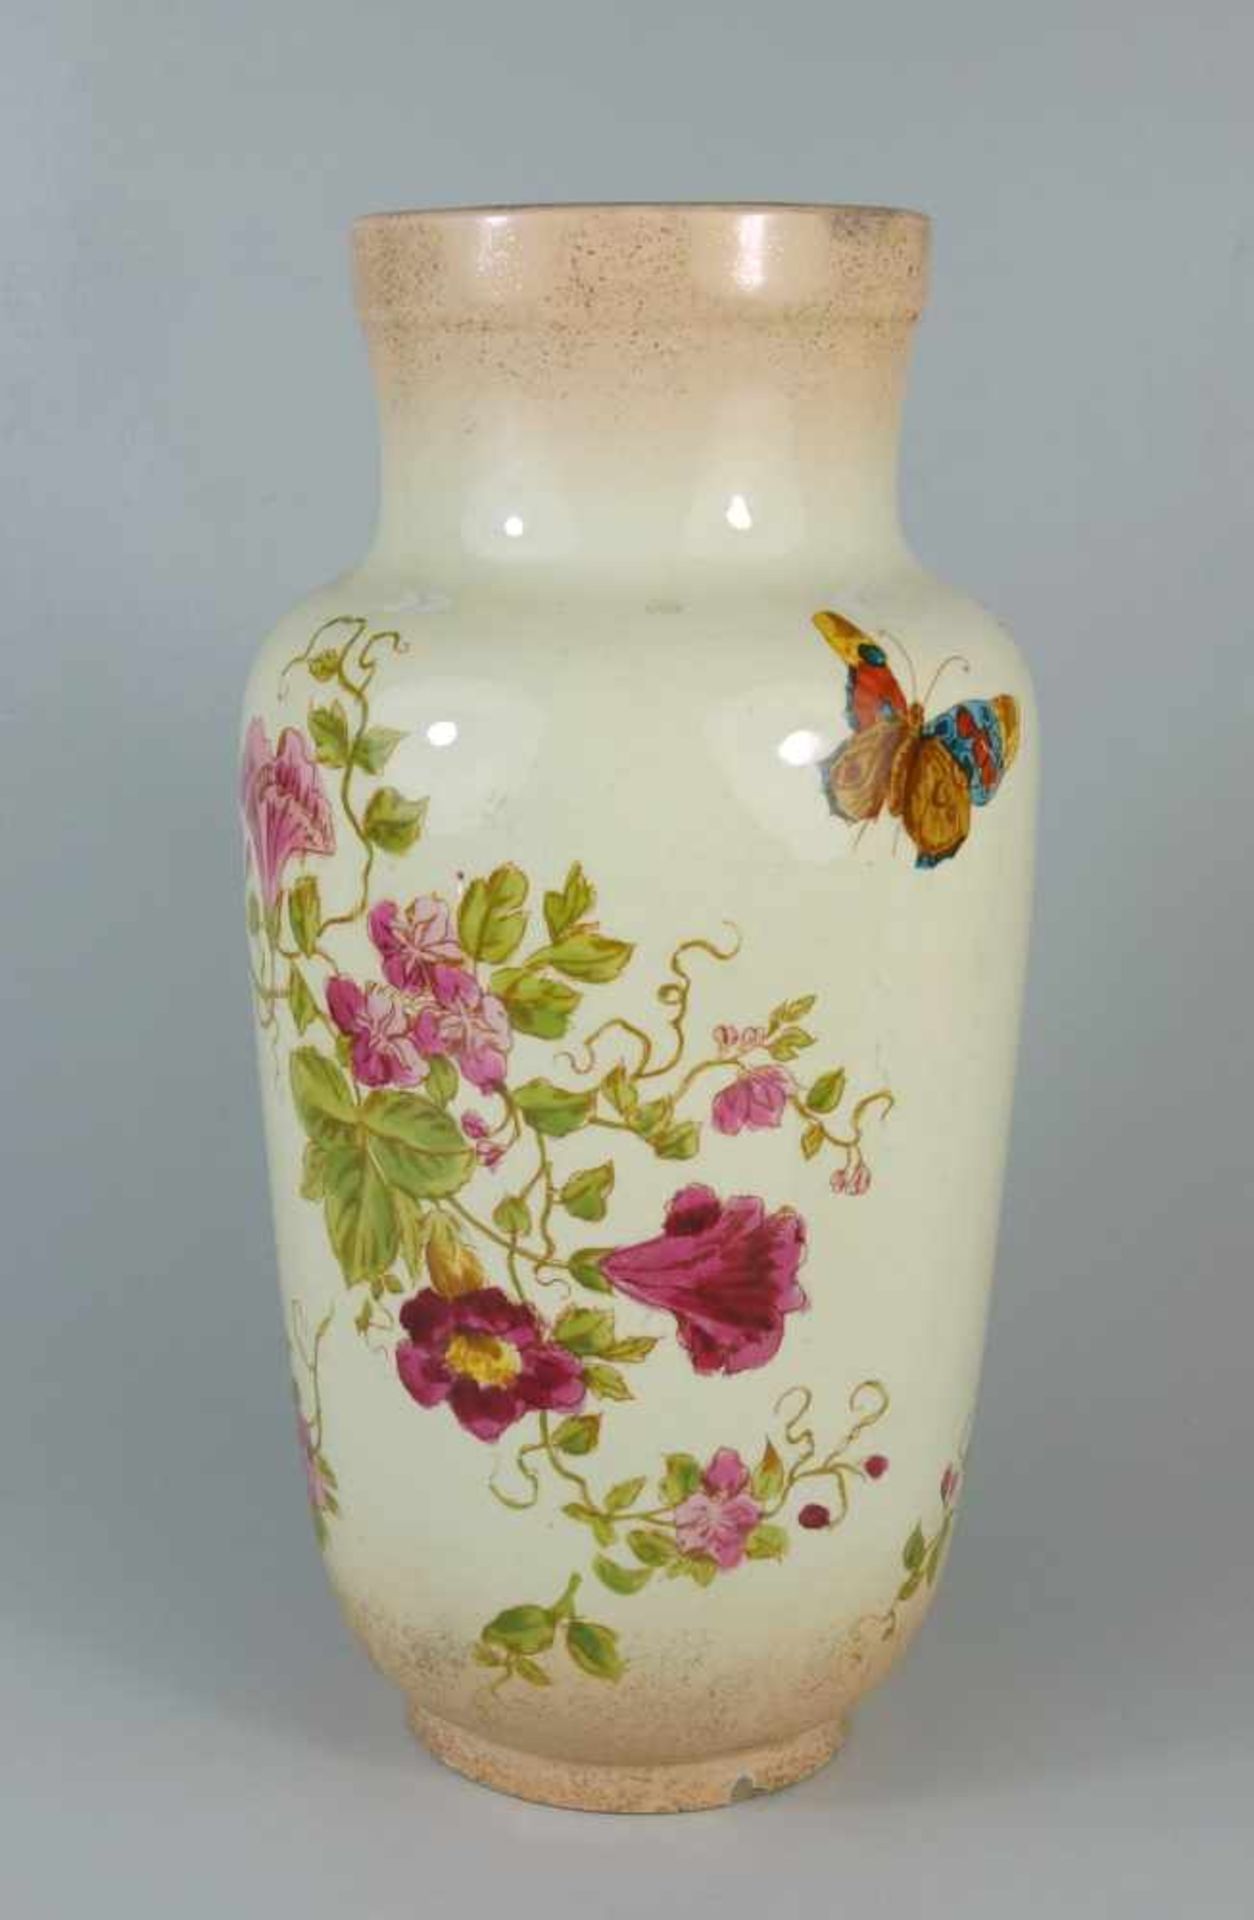 Vase mit Blumen und Schmetterling, um 1920/30 ohne Herstellermarke, umlaufende Handmalerei, H.